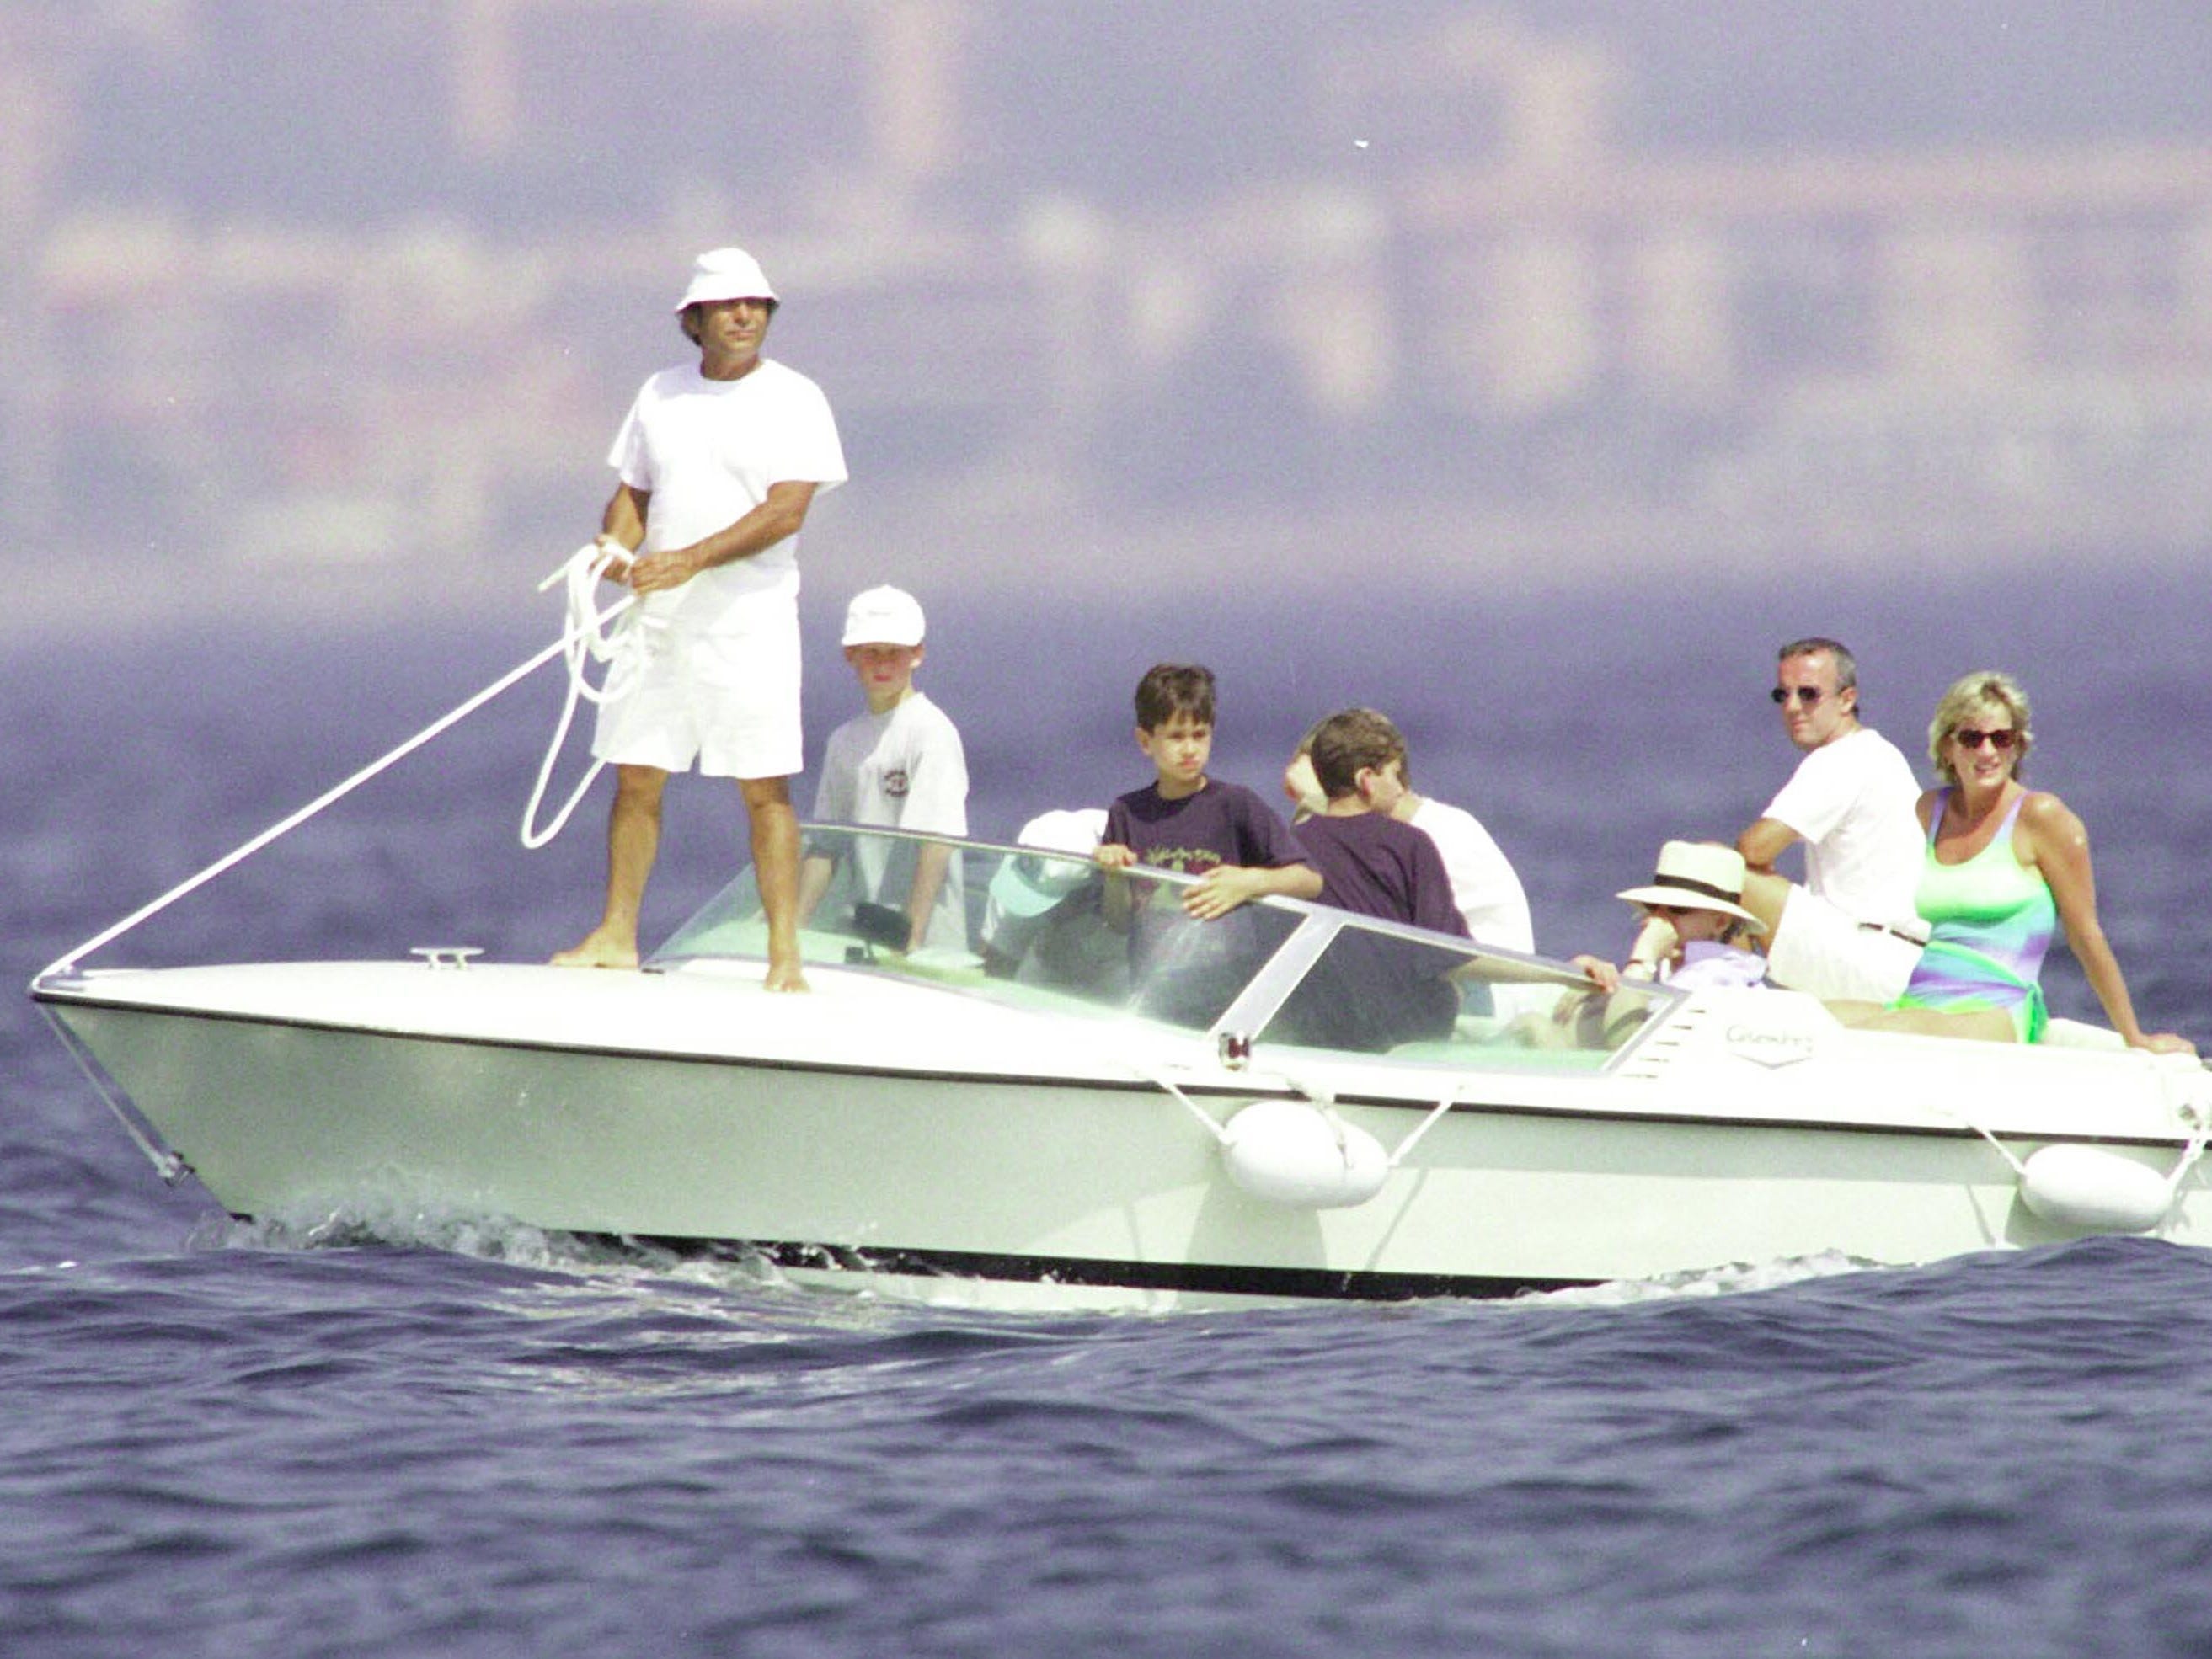 Dodi al Fayed, Prinz Harry und Diana, Prinzessin von Wales, werden im Sommer 1997 in St. Tropez gesehen, kurz bevor Diana und ihr Freund Dodi am 31. August 1997 bei einem Autounfall in Paris ums Leben kamen.